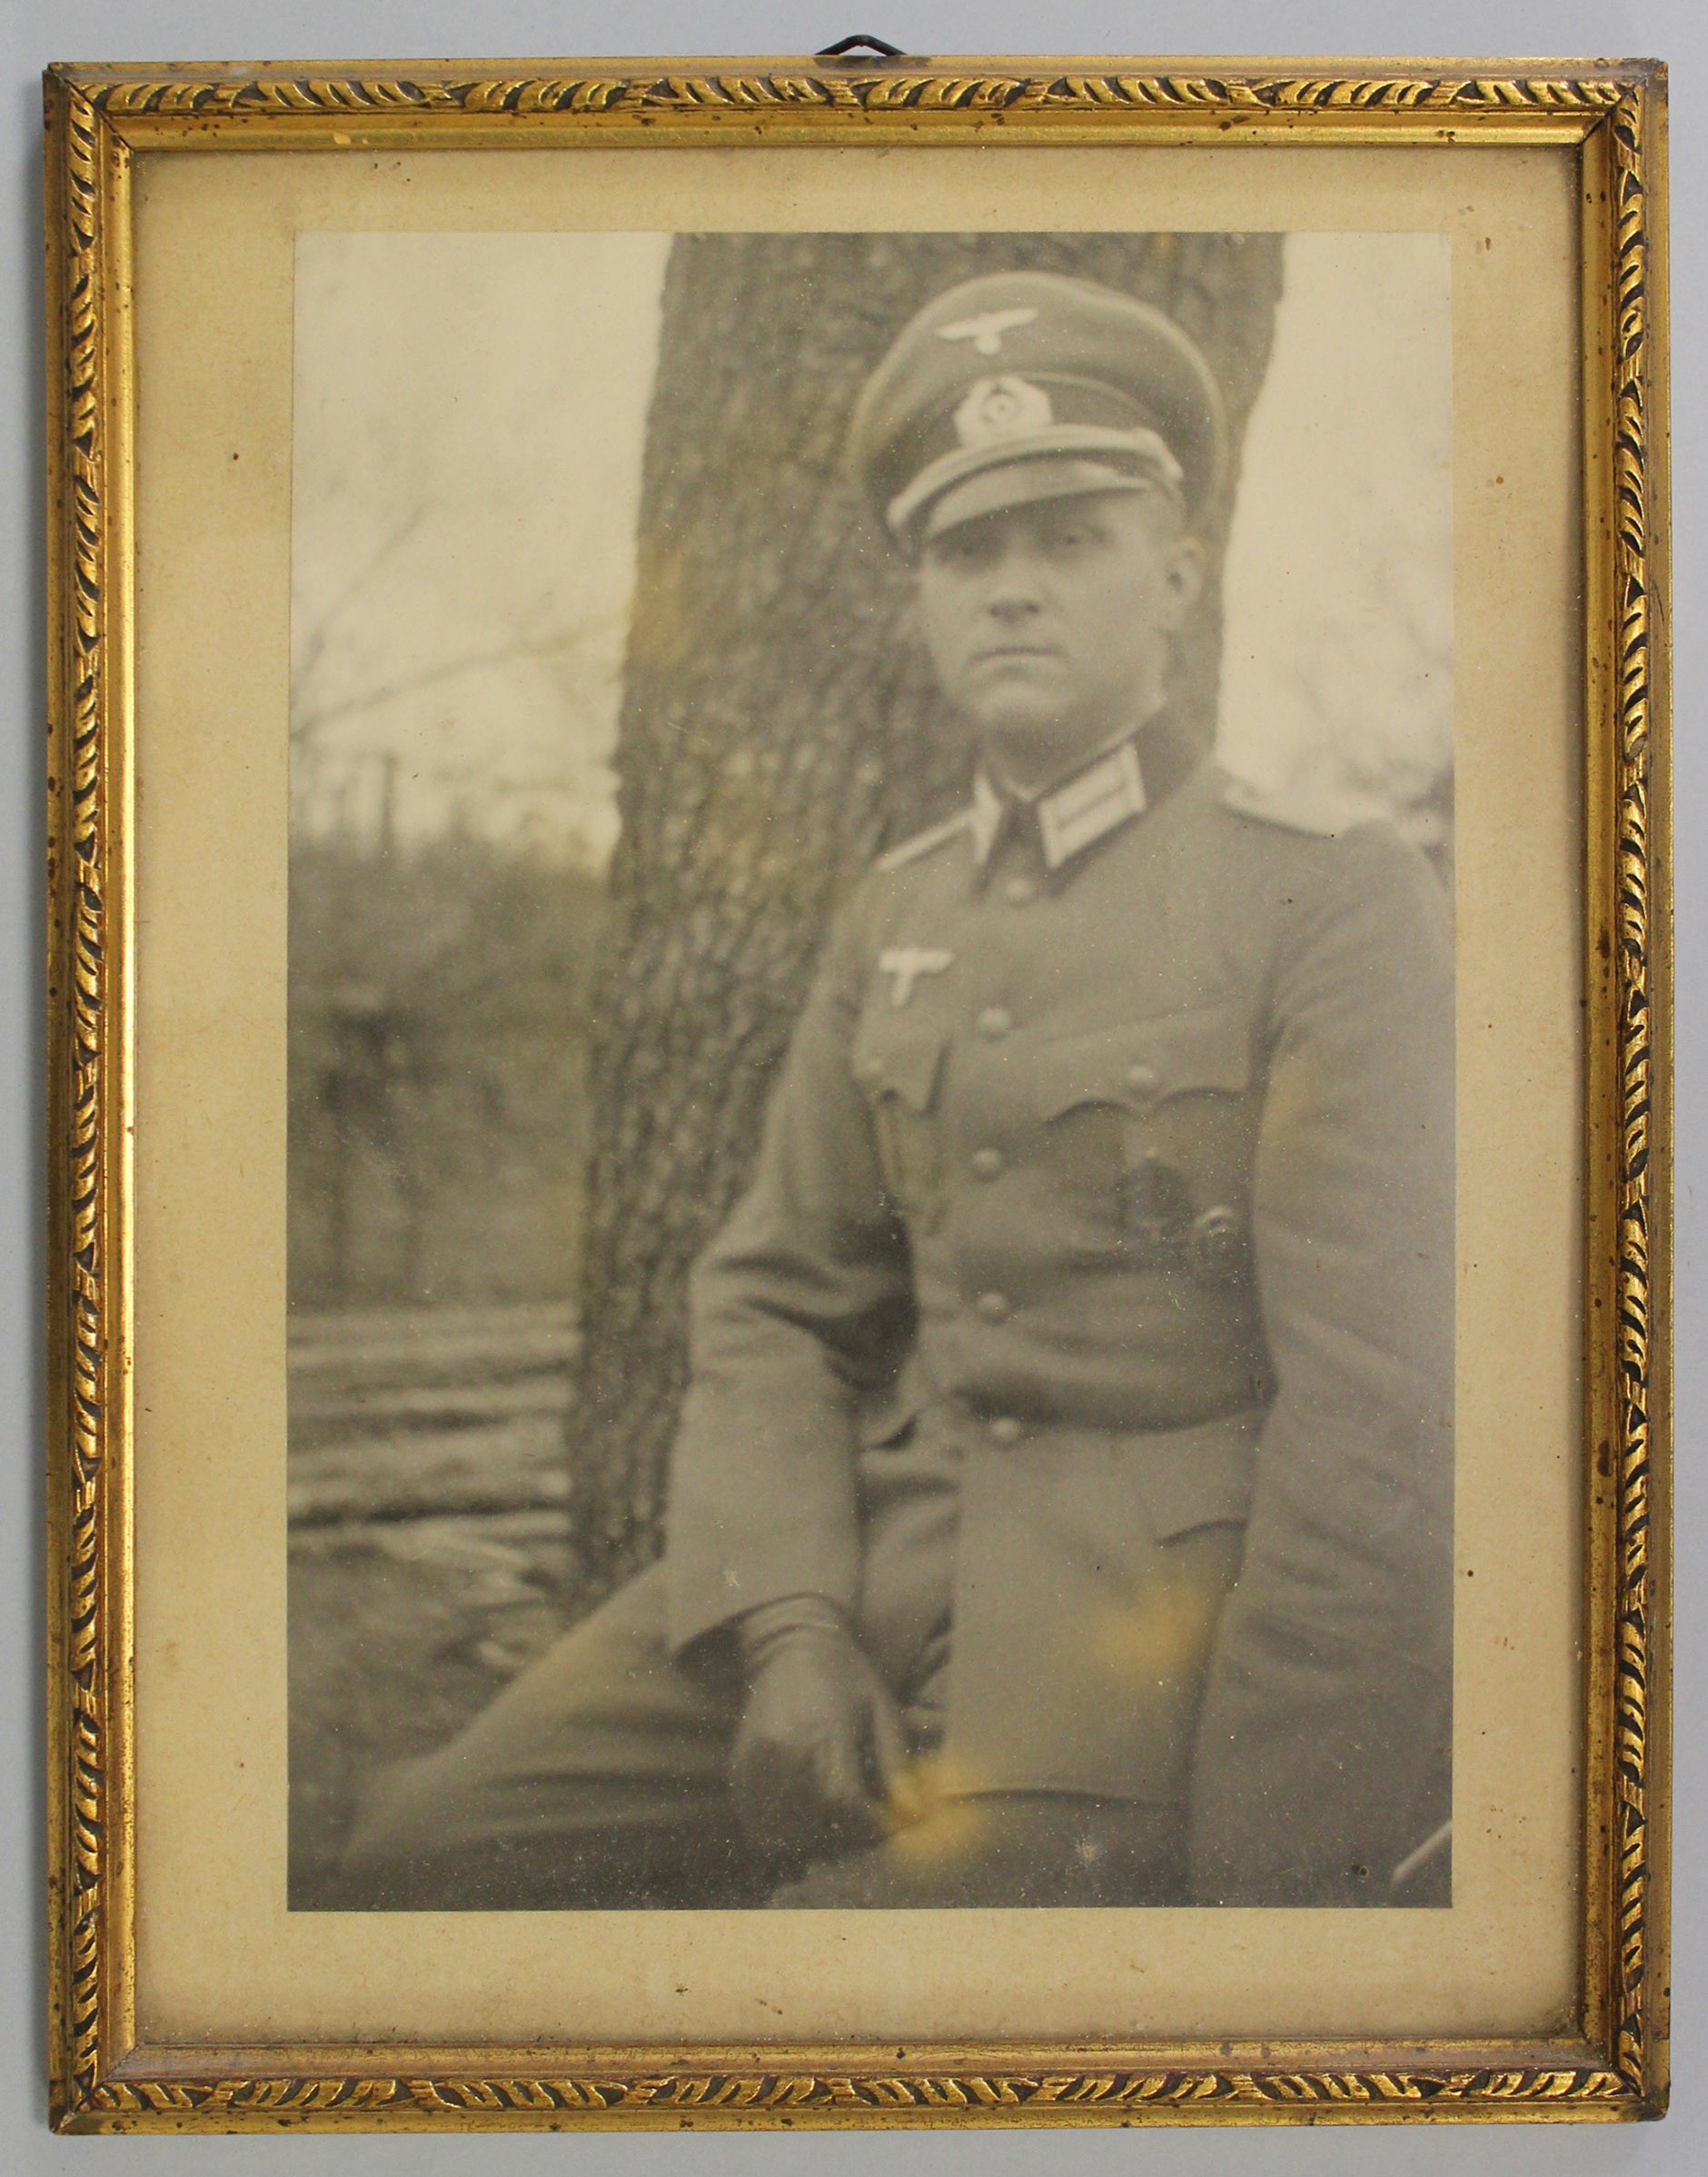 Fotografie, gerahmt, Mann in Uniform (Museum Wolmirstedt RR-F)